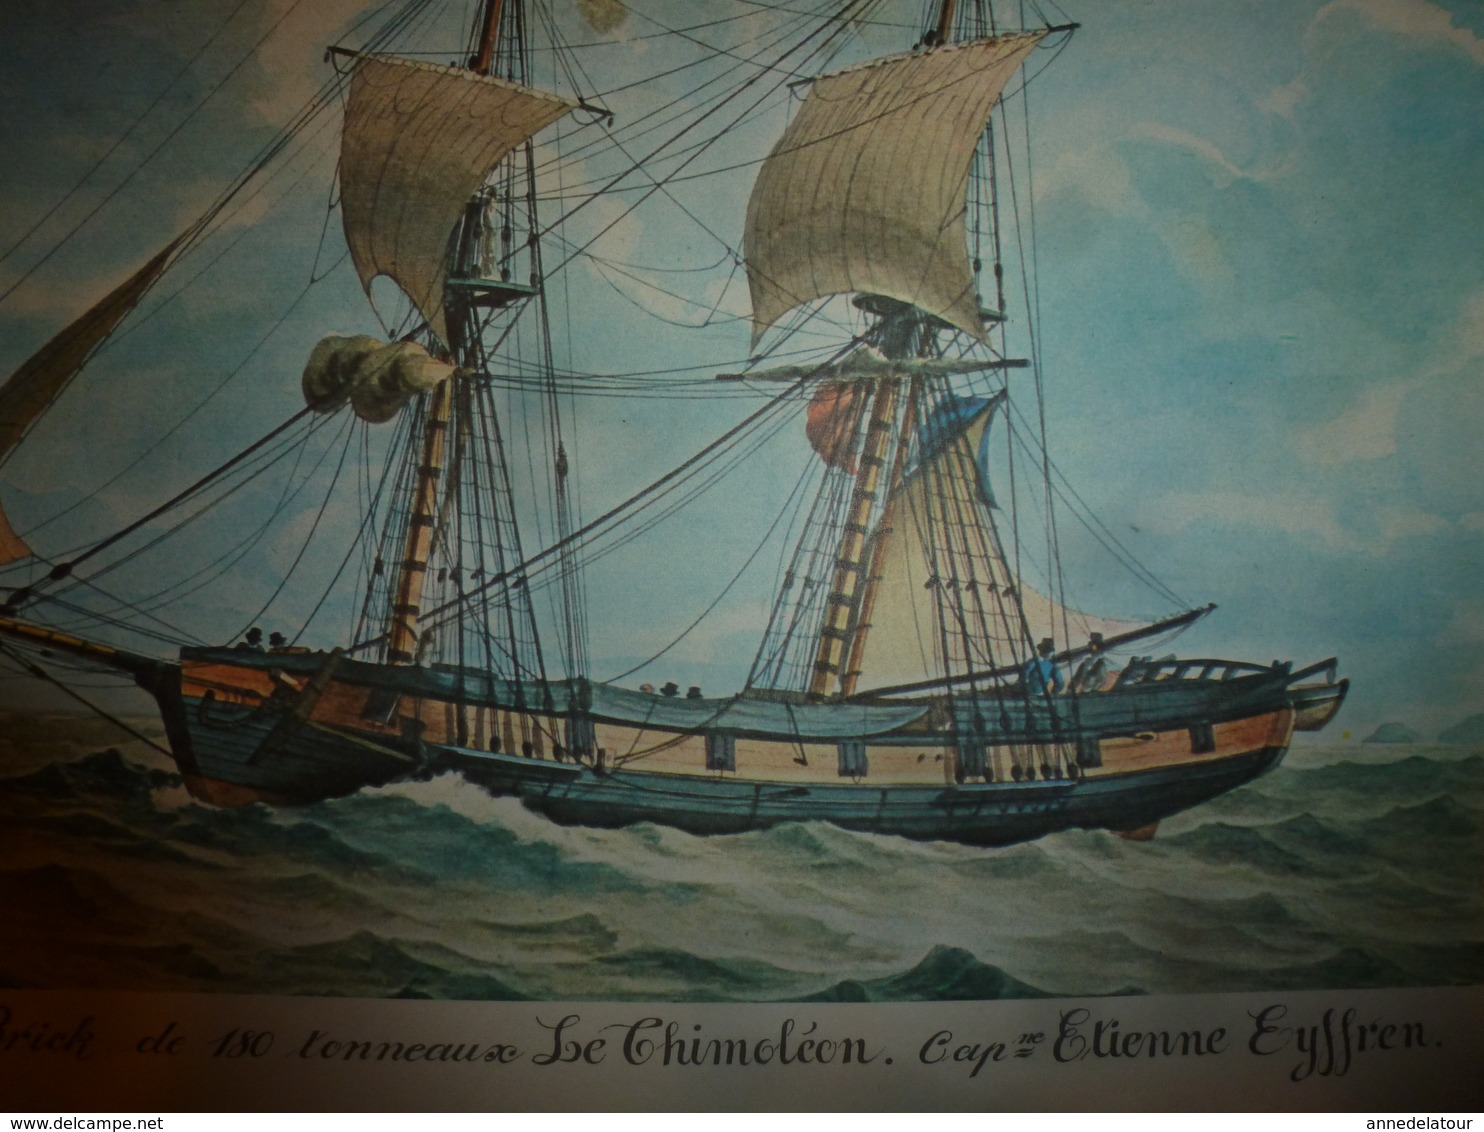 Brick De 180 Tonneaux LE THIMOLEON, Capitaine Eyffren  (Portrait Navire  ,dimension Hors-tout = 48cm X 36cm - Décoration Maritime